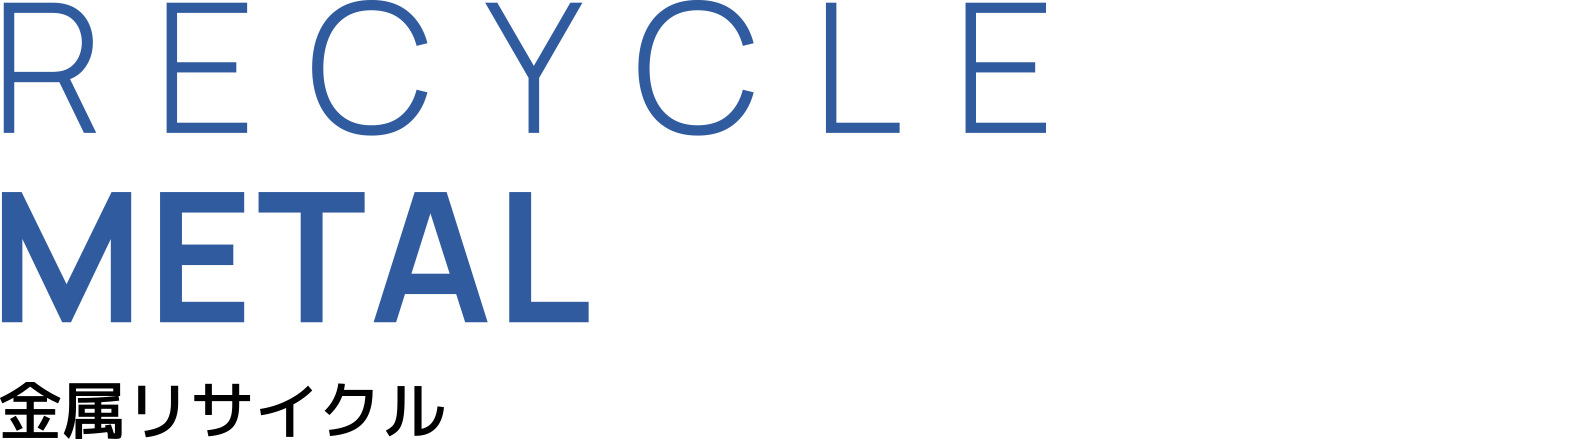 RECYCLE METAL 金属リサイクル